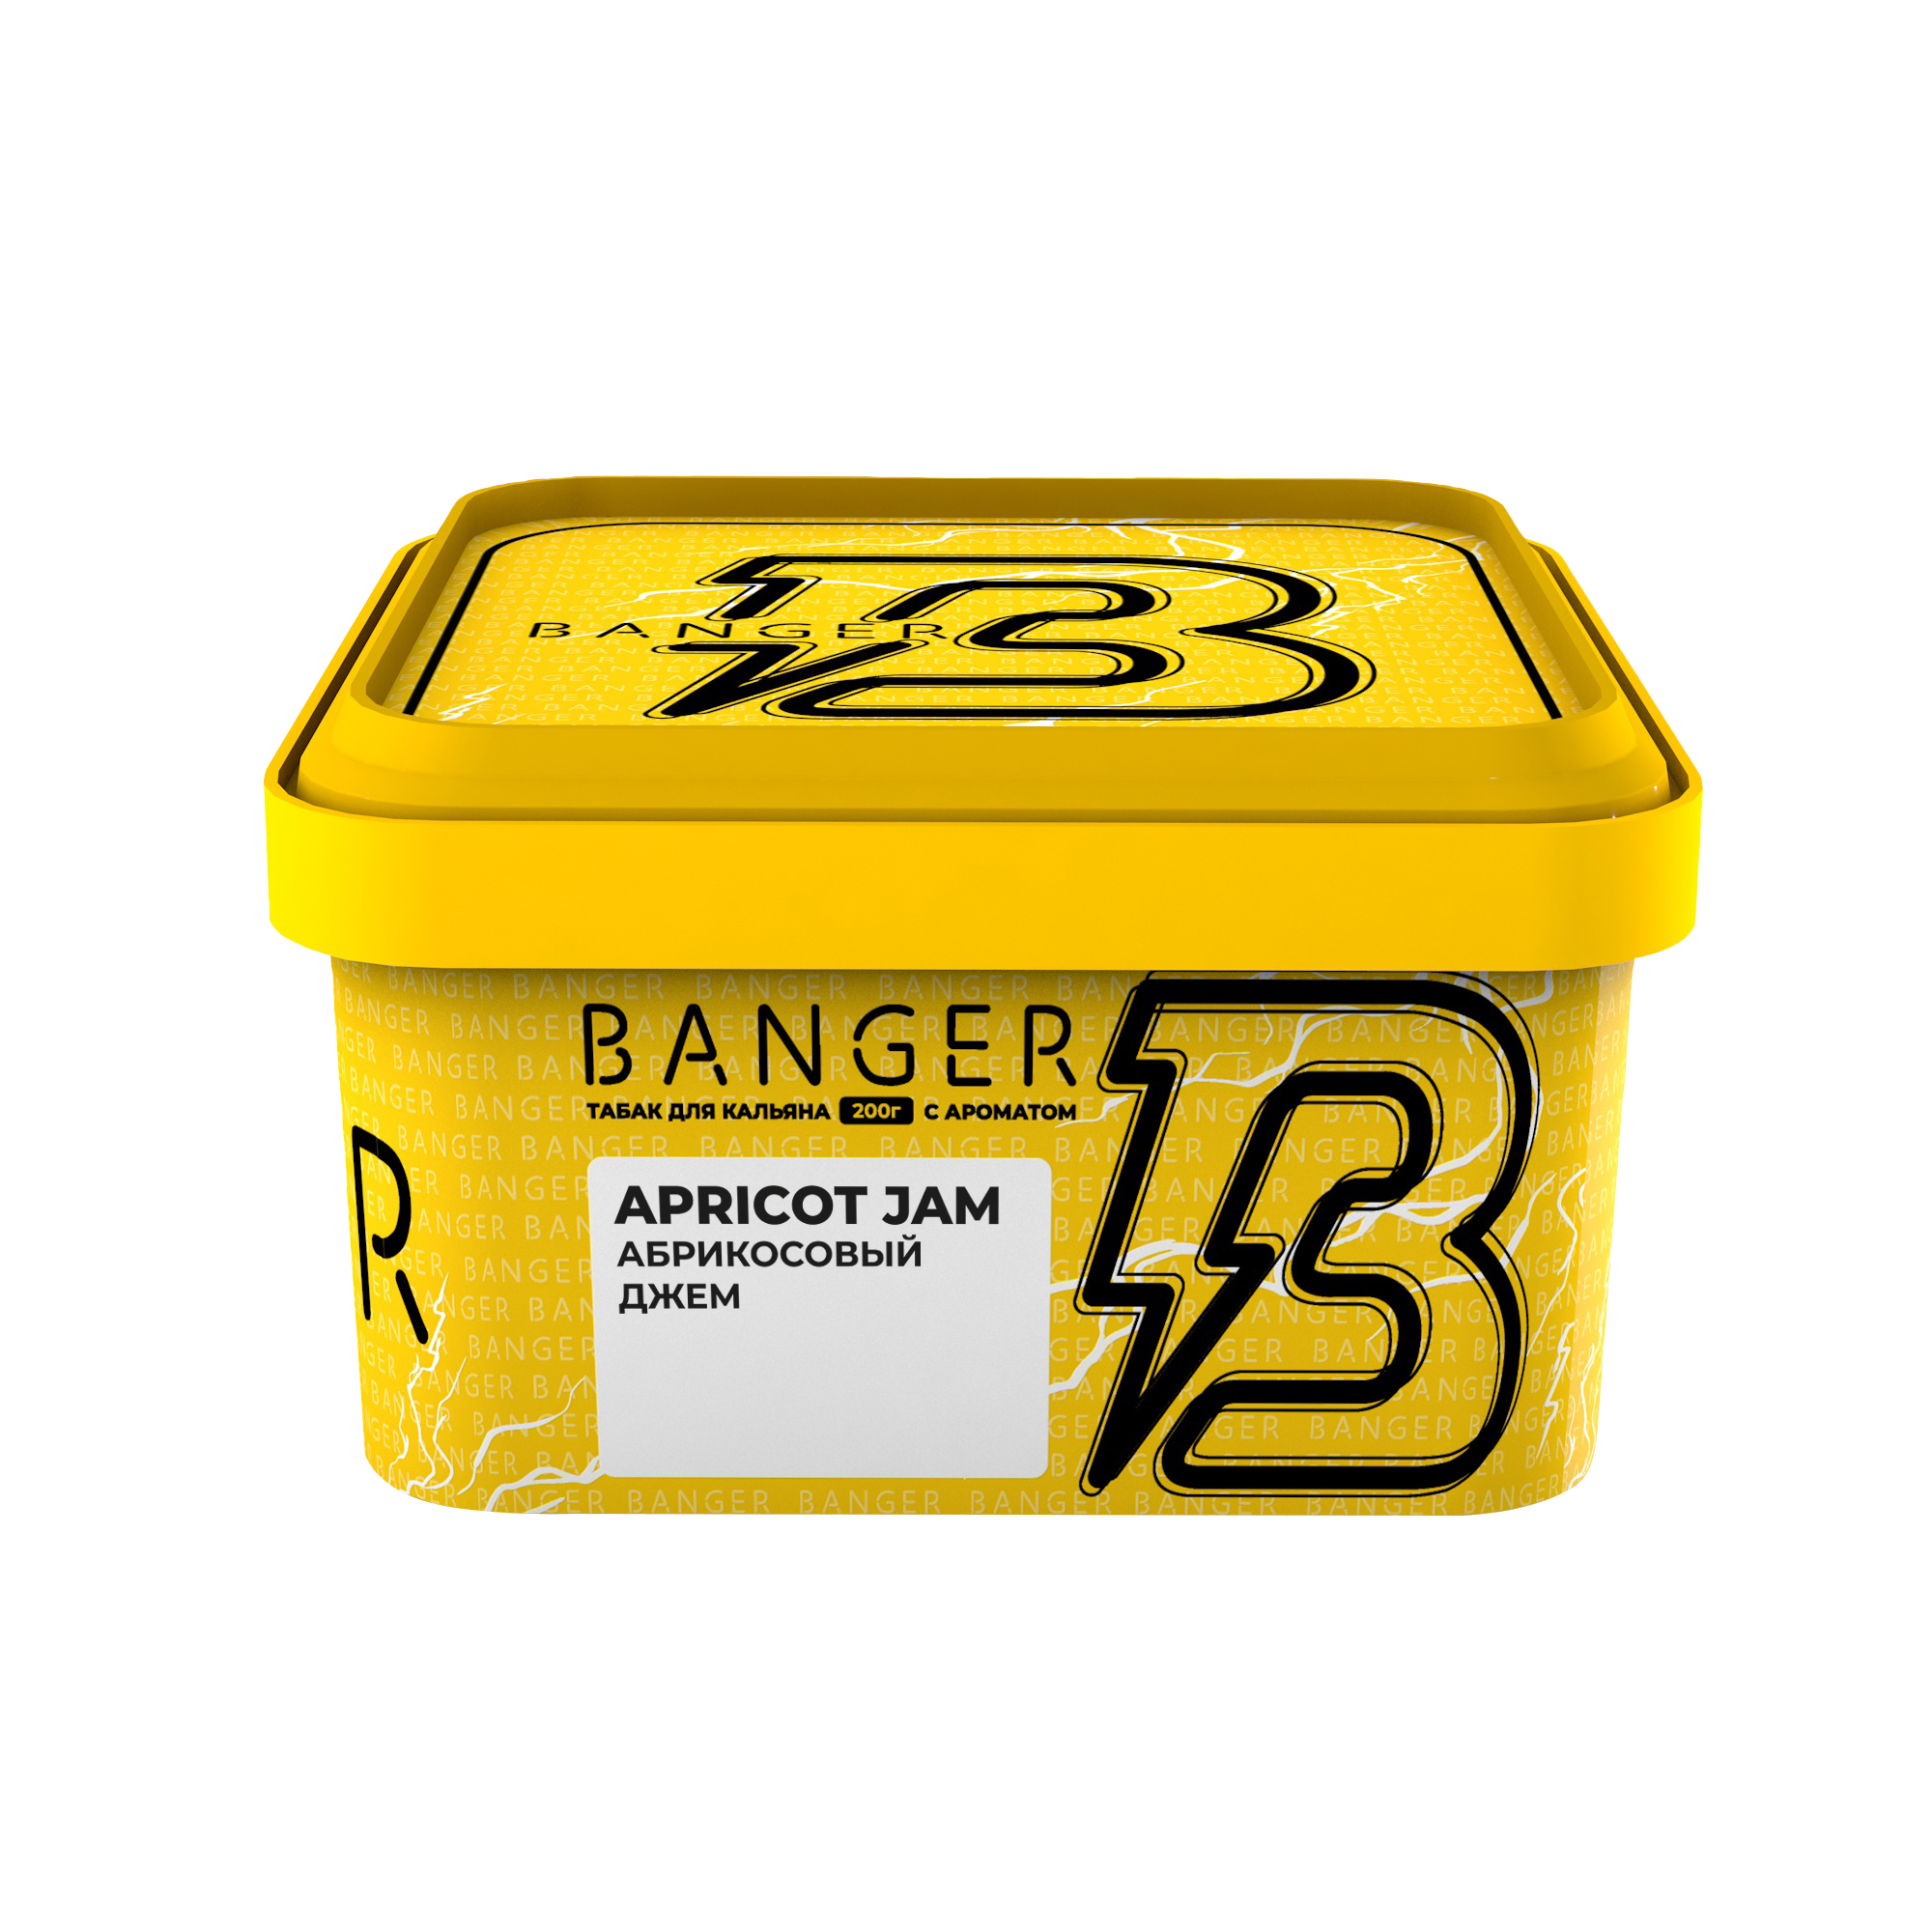 Табак для кальяна - Banger - APRICOT JAM ( с ароматом Абрикосовый Джем ) - 200 г